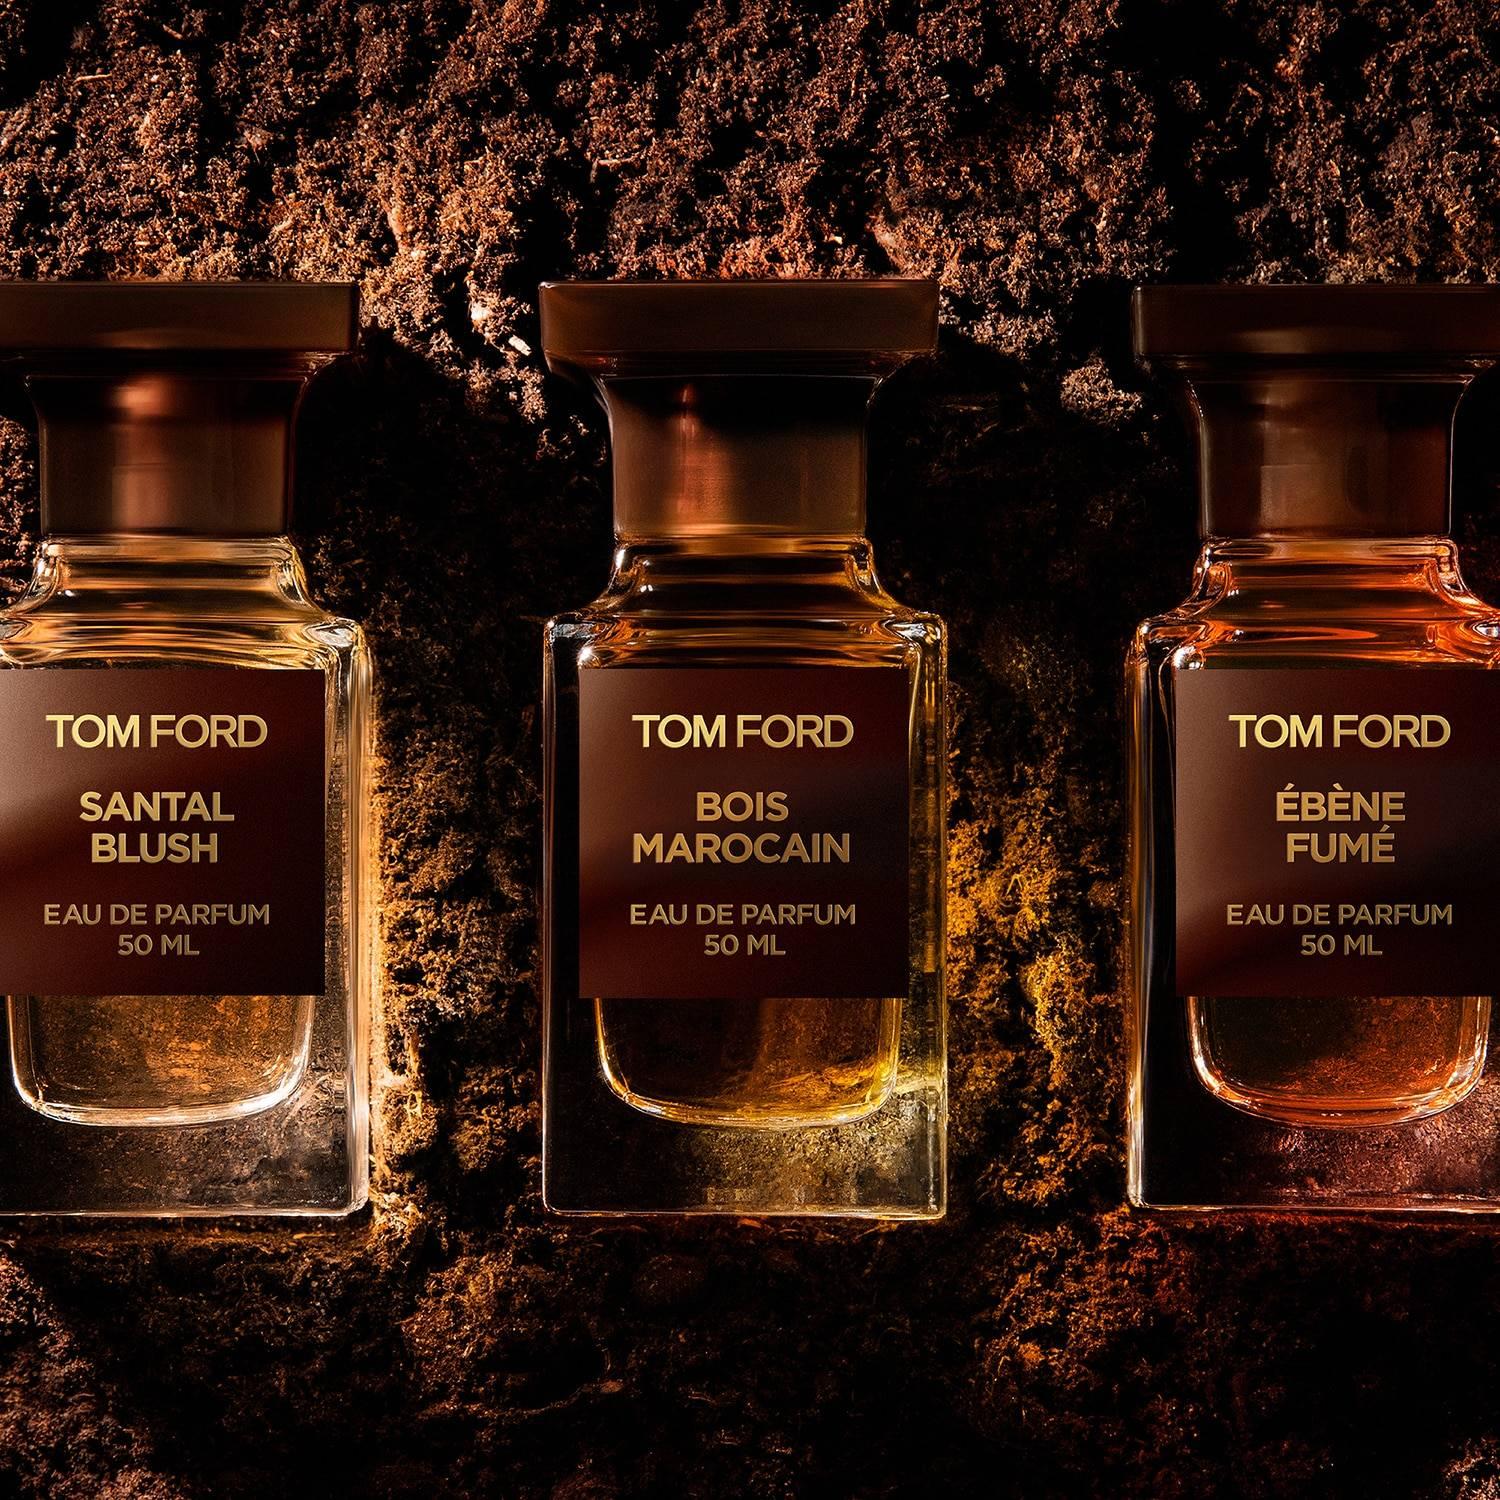 Tom Ford Santal Blush EDP | My Perfume Shop Australia